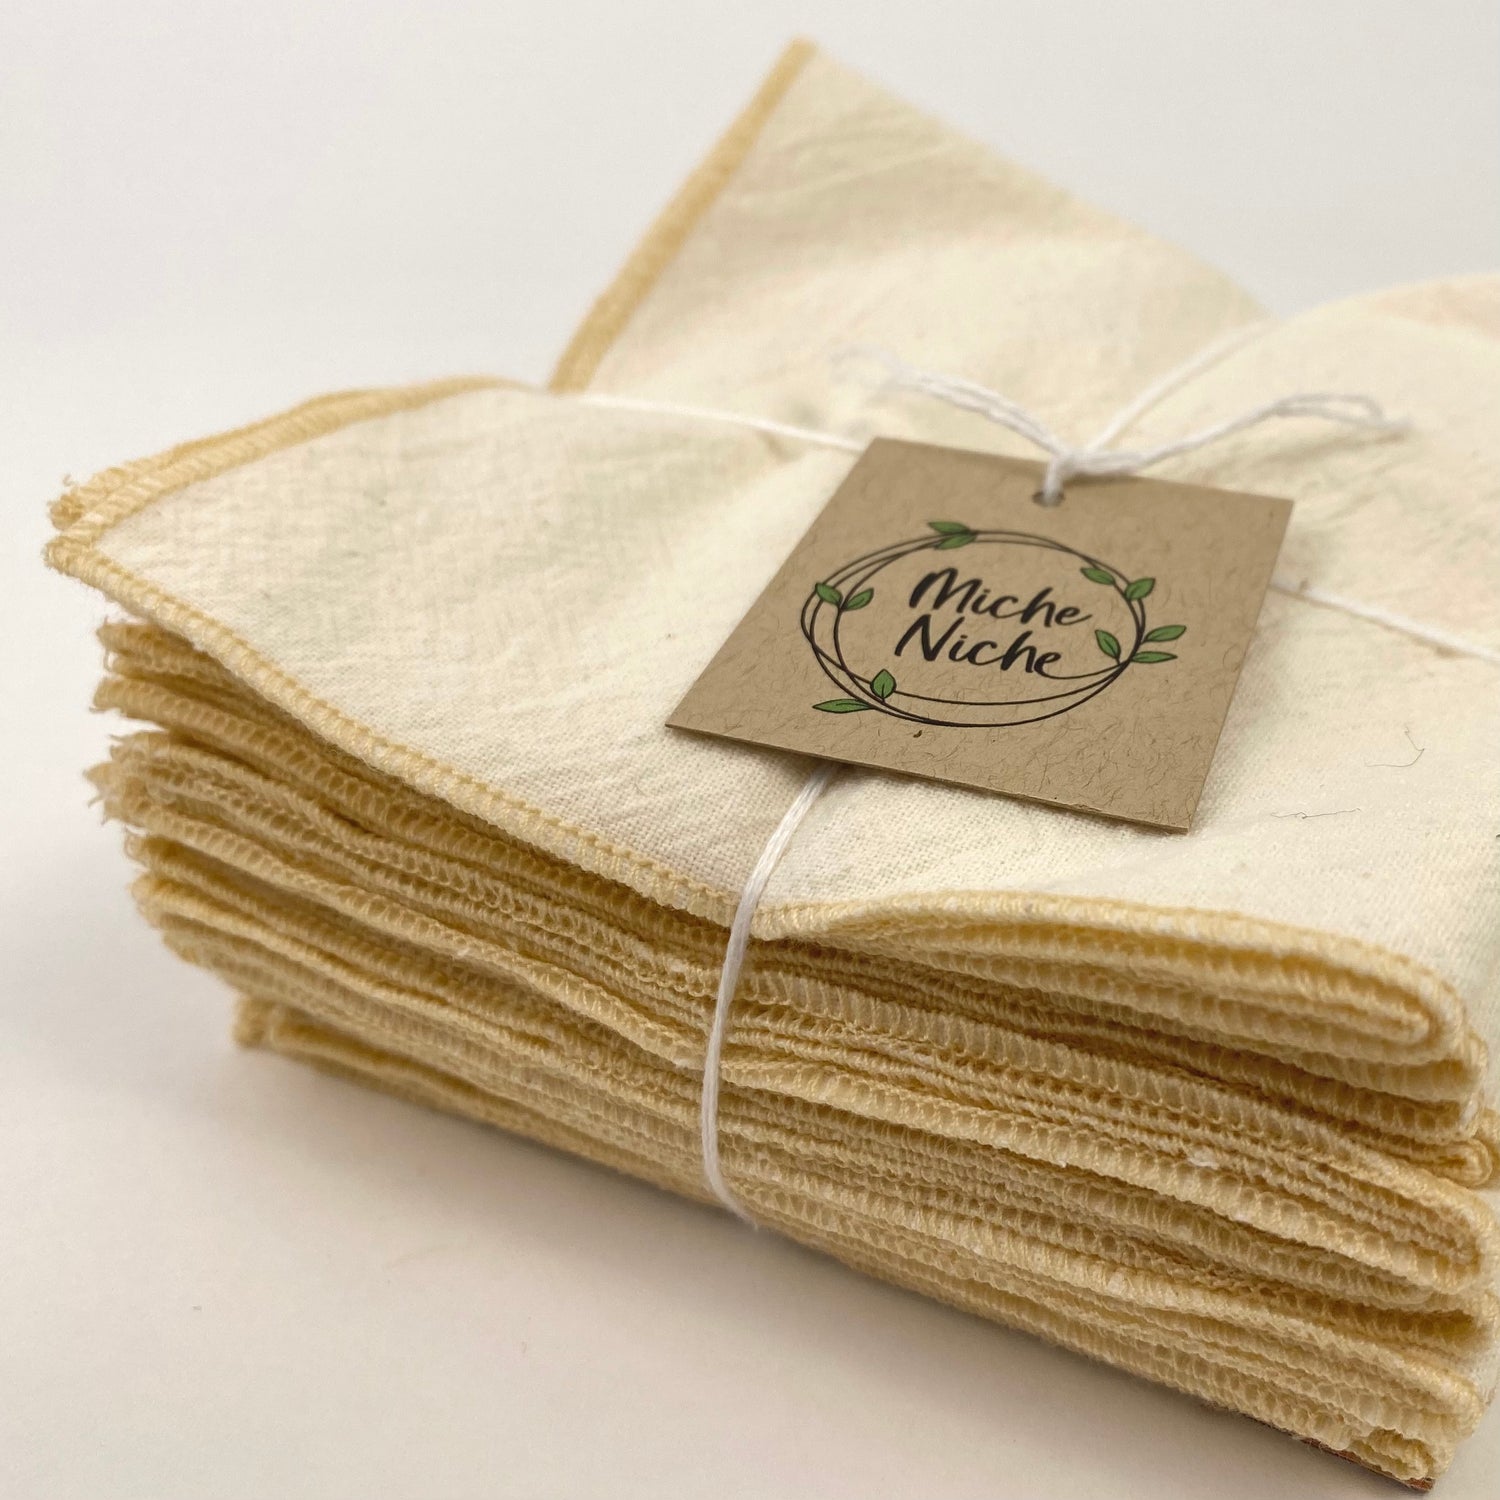 Miche Niche - Everyday Cloth Napkins